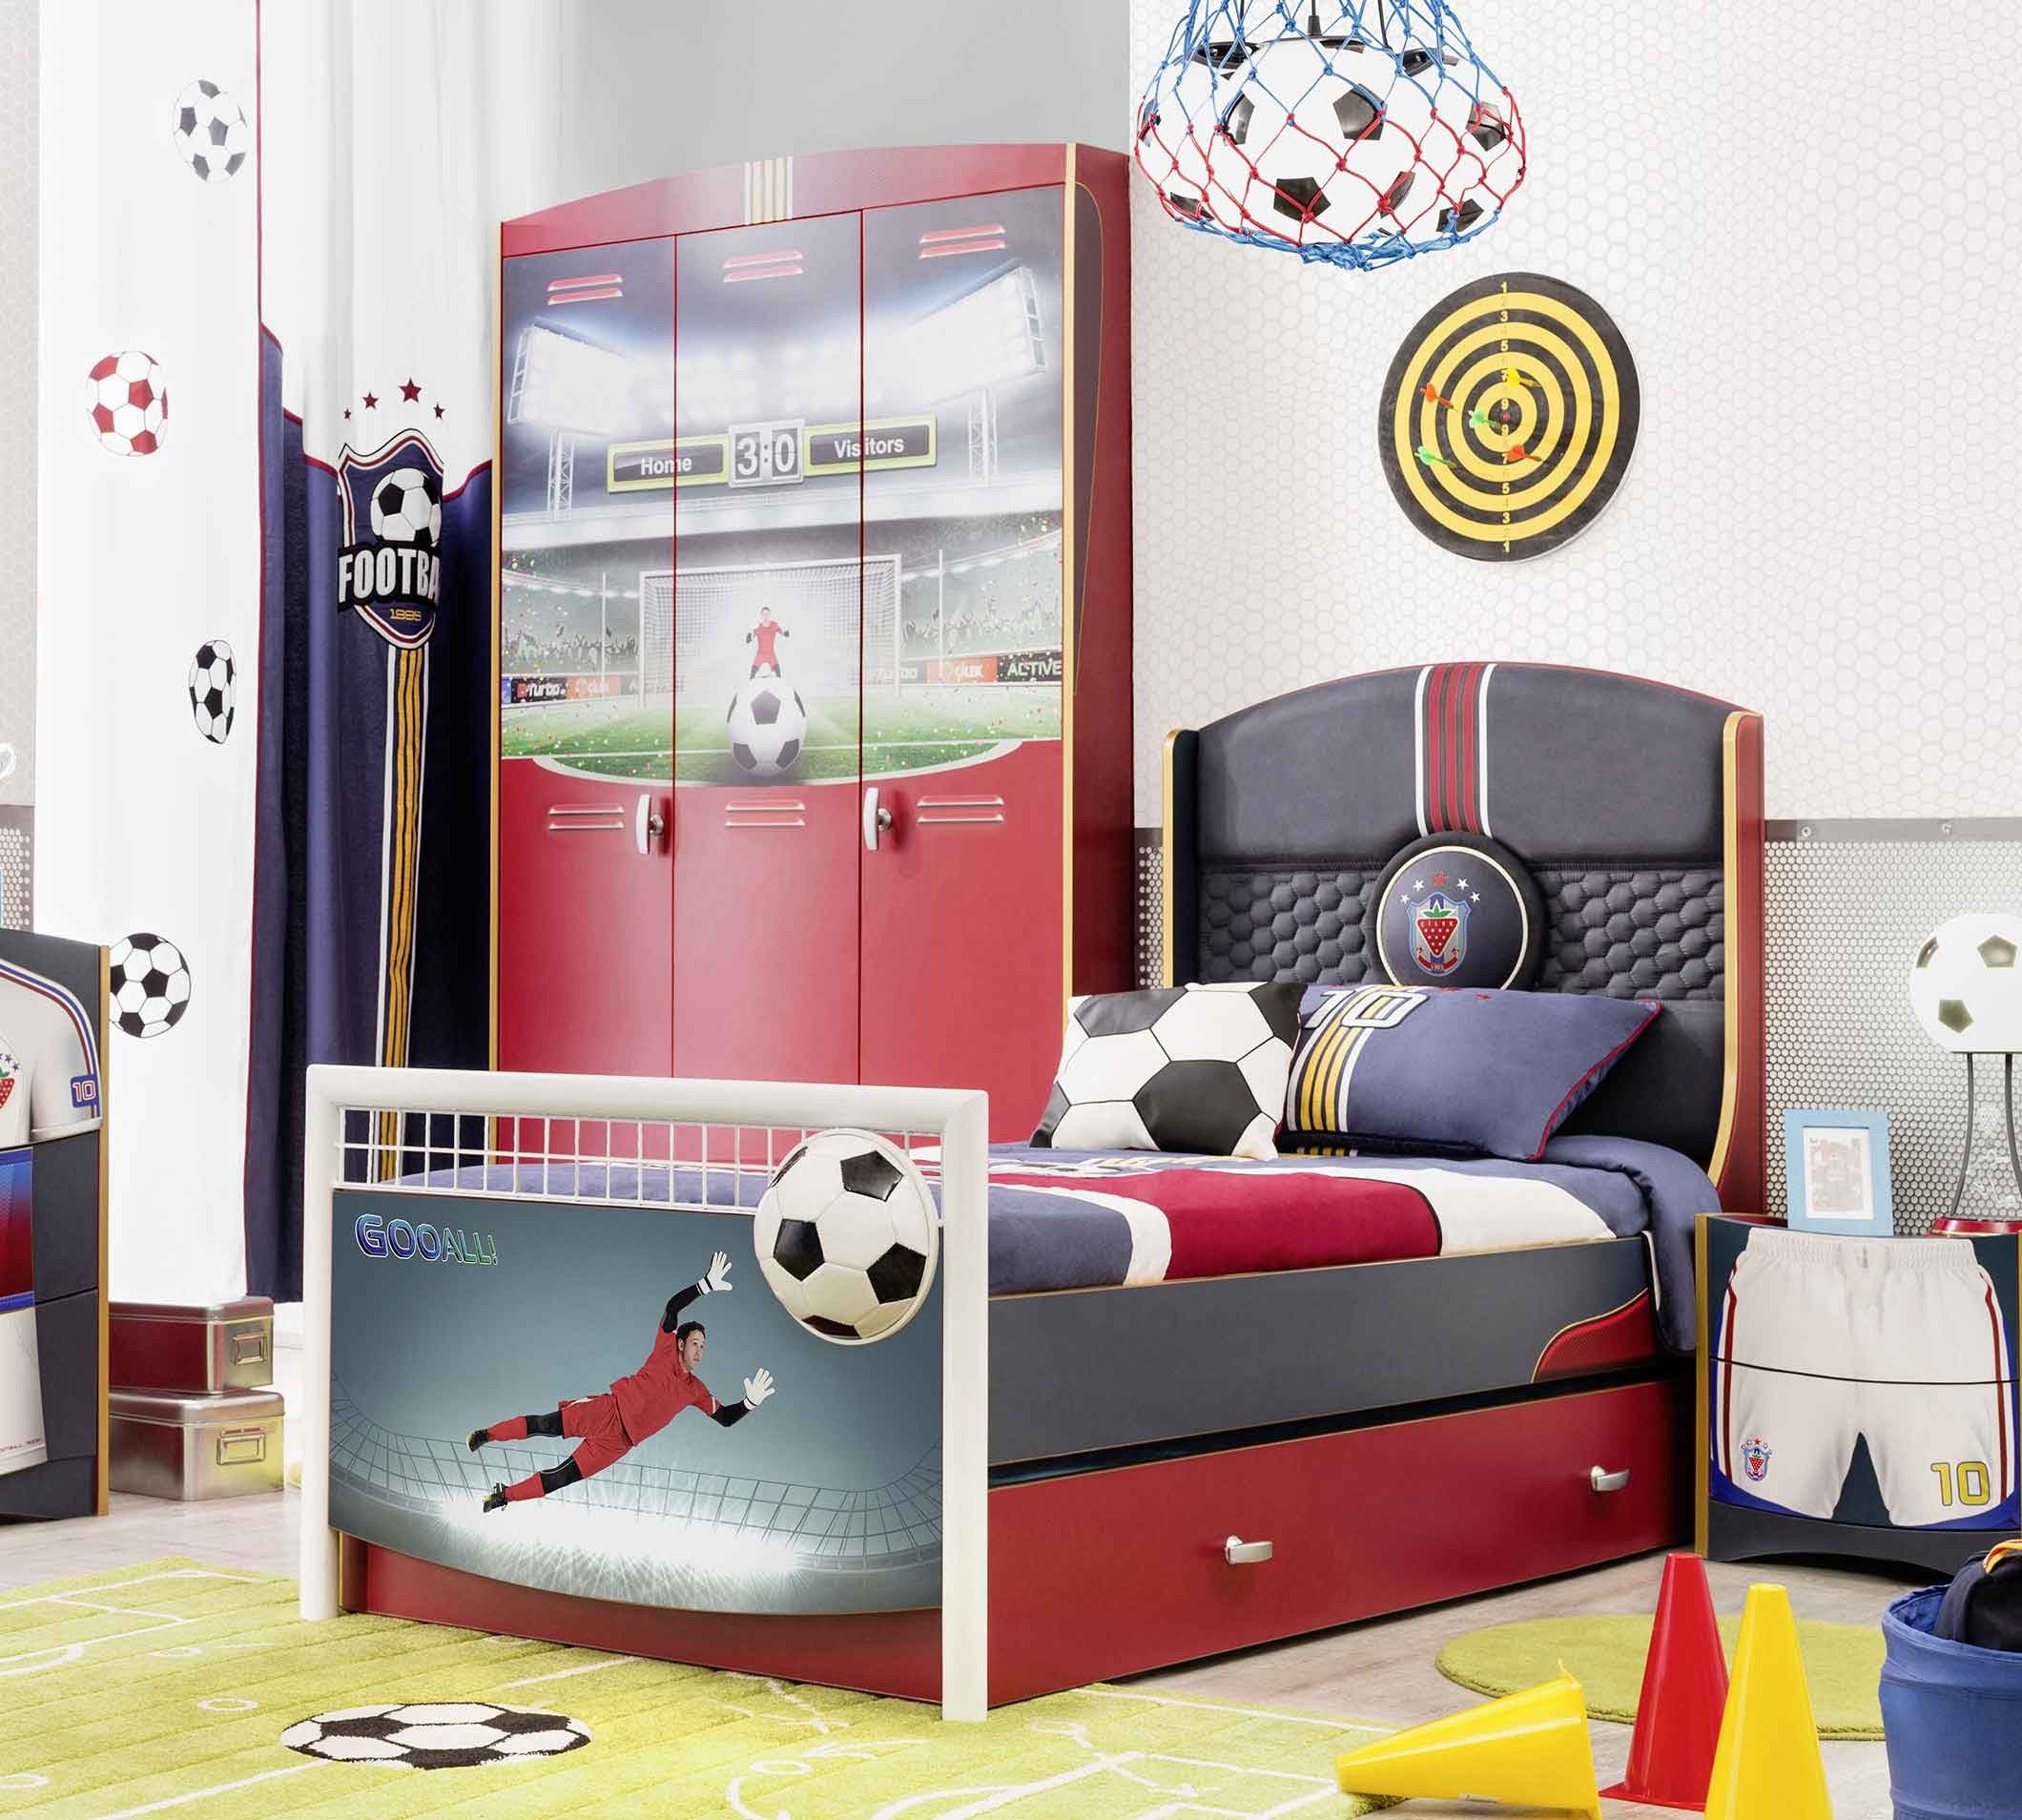 Lit store ru. Детская комната в футбольном стиле. Кровать в стиле футбола. Кровать для мальчика стиле футбола. Мебель для мальчика в футбольном стиле.